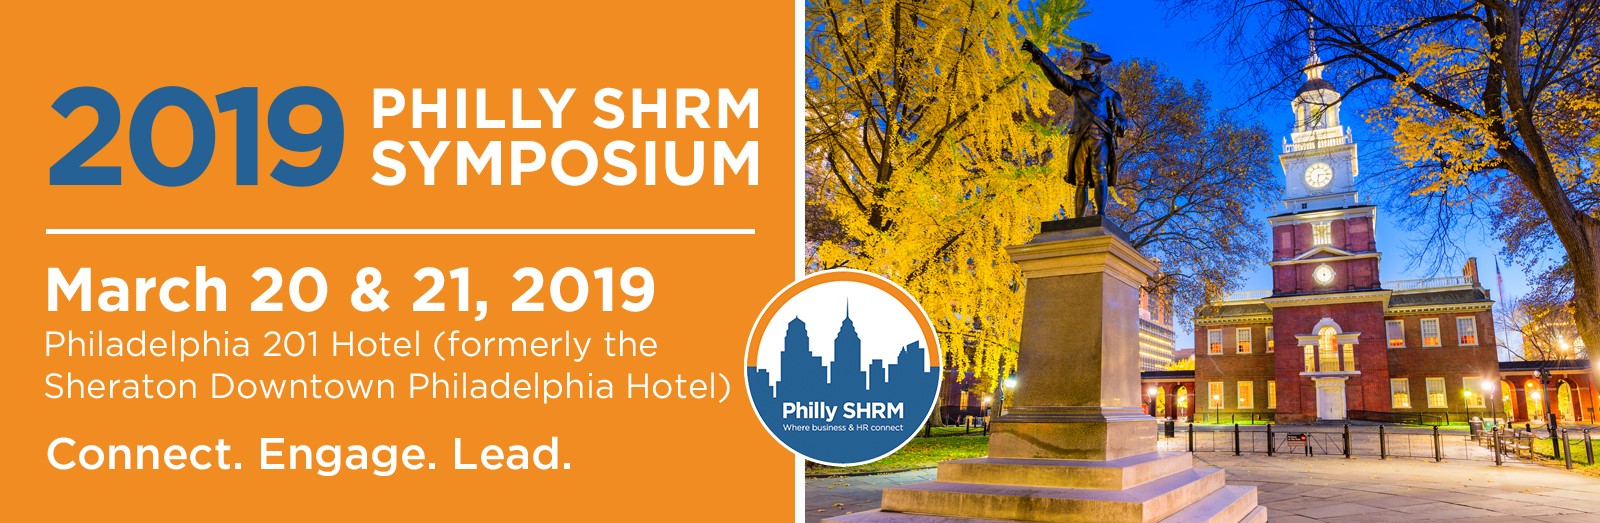 2019 Philly SHRM Symposium The Philly SHRM Symposium